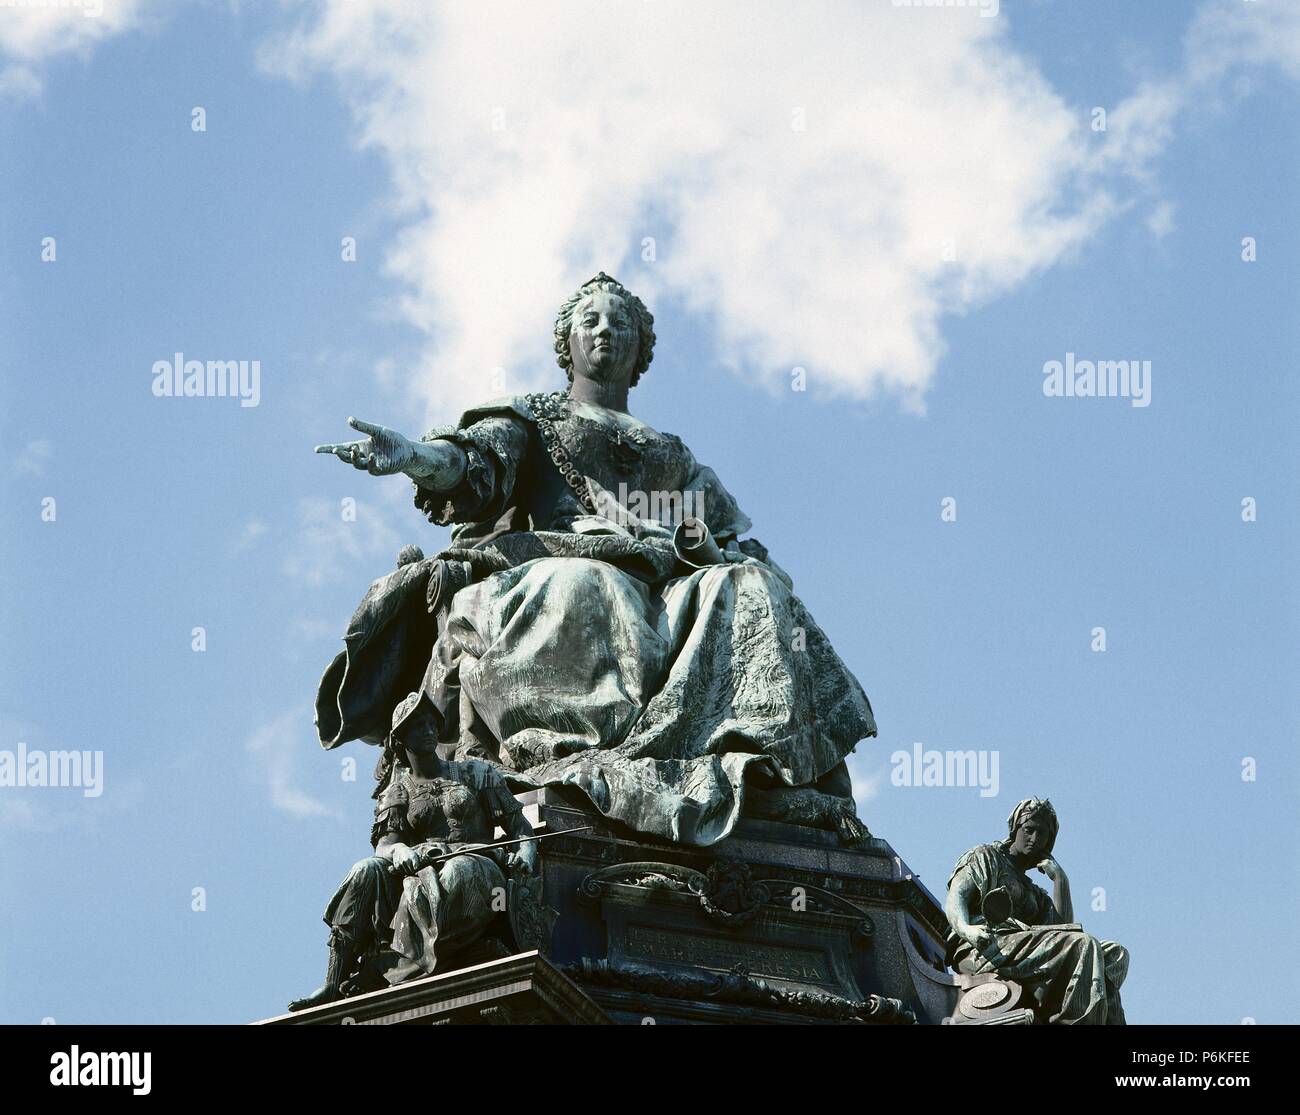 MARIA TERESA DE AUSTRIA (Viena,1717-Viena,1780). Archiduquesa de Austria, emperatriz de Alemania (1740-1780), reina de Hungría (desde 1741) y de Bohemia (desde 1743), primogénita de Carlos VI. Estatua en Maria-Theresia-Platz, realizada en 1888 por Kaspar von ZUMBUSCH, representano a la emperatriz llevando en la mano la Pragmática Sanción de 1713. VIENA. Austria. Stock Photo